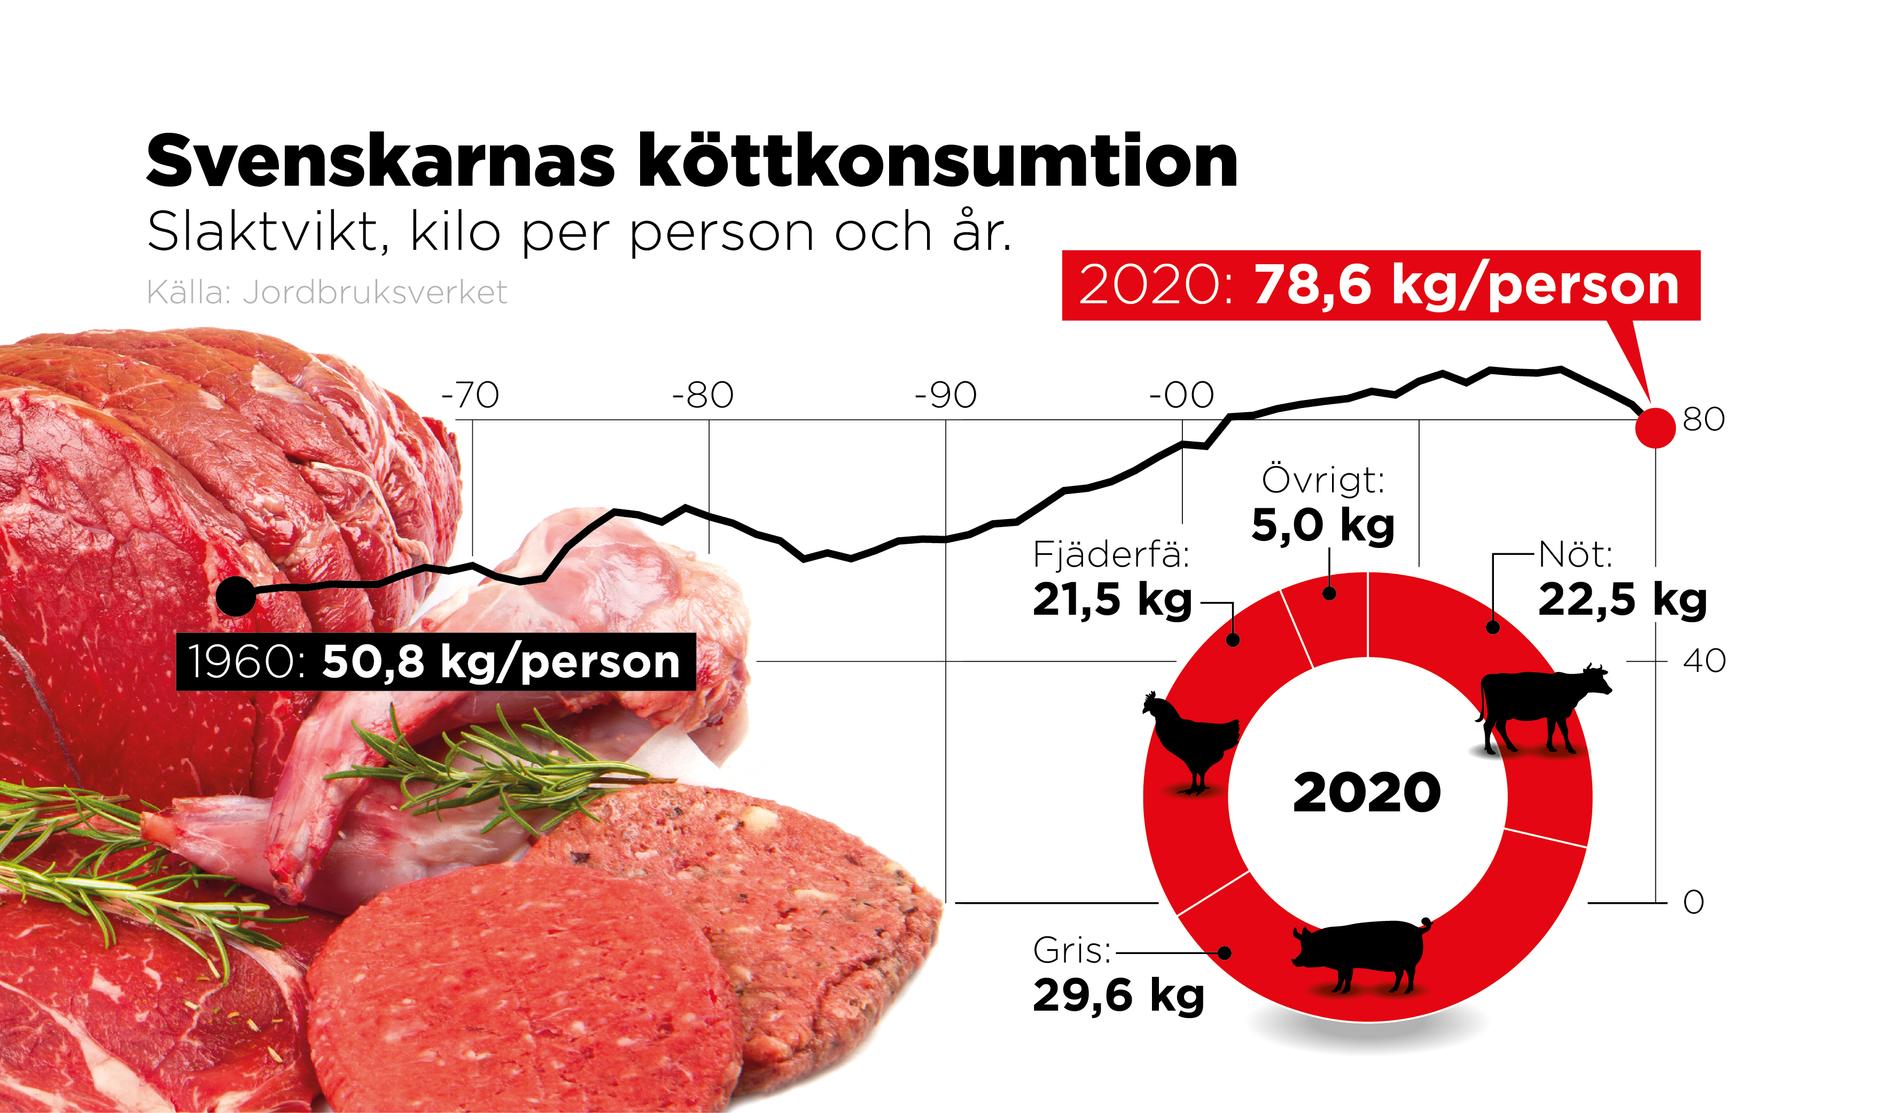 Slaktvikt, kilo per person och år.